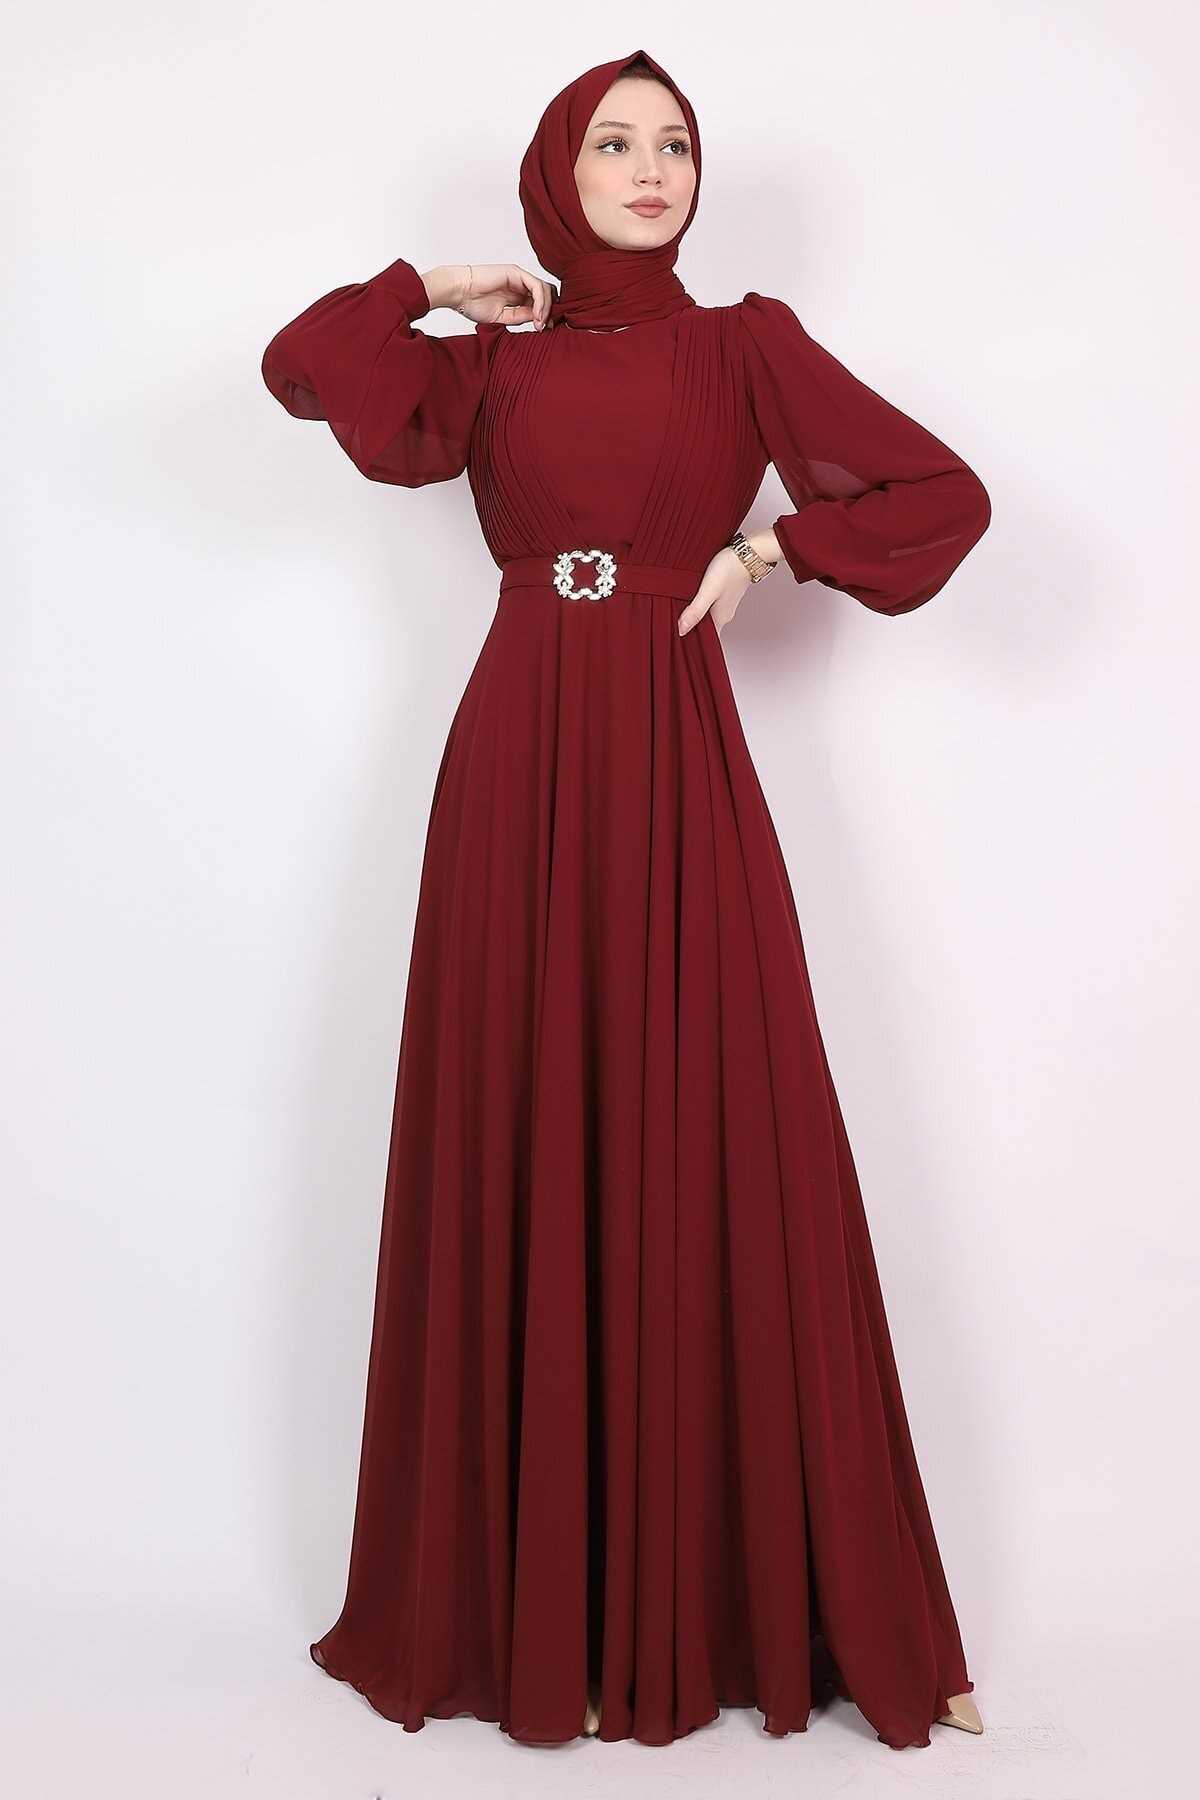 لباس مجلسی زنانه اسلامی مدل جدید برند Modarana رنگ زرشکی ty136869864